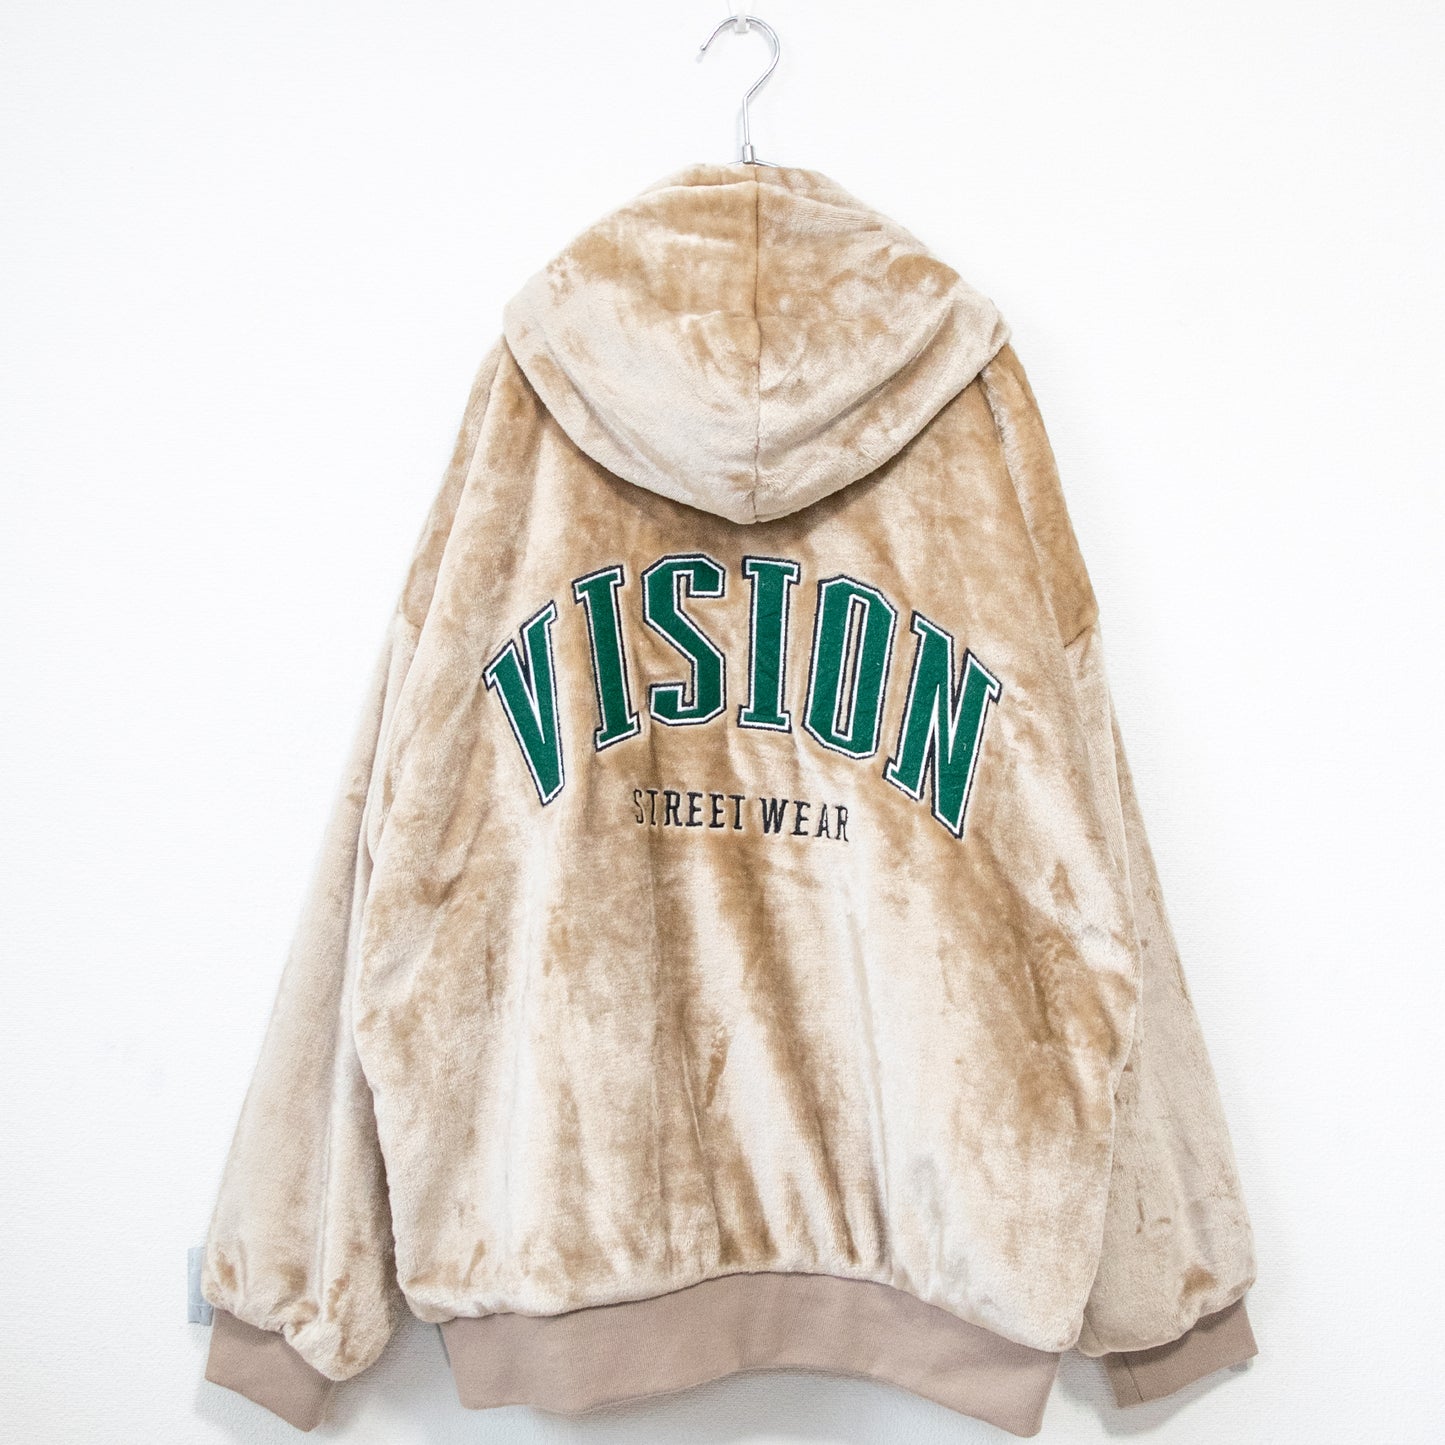 VISION STREET WEAR Patch Fur Blouson Jacket Beige